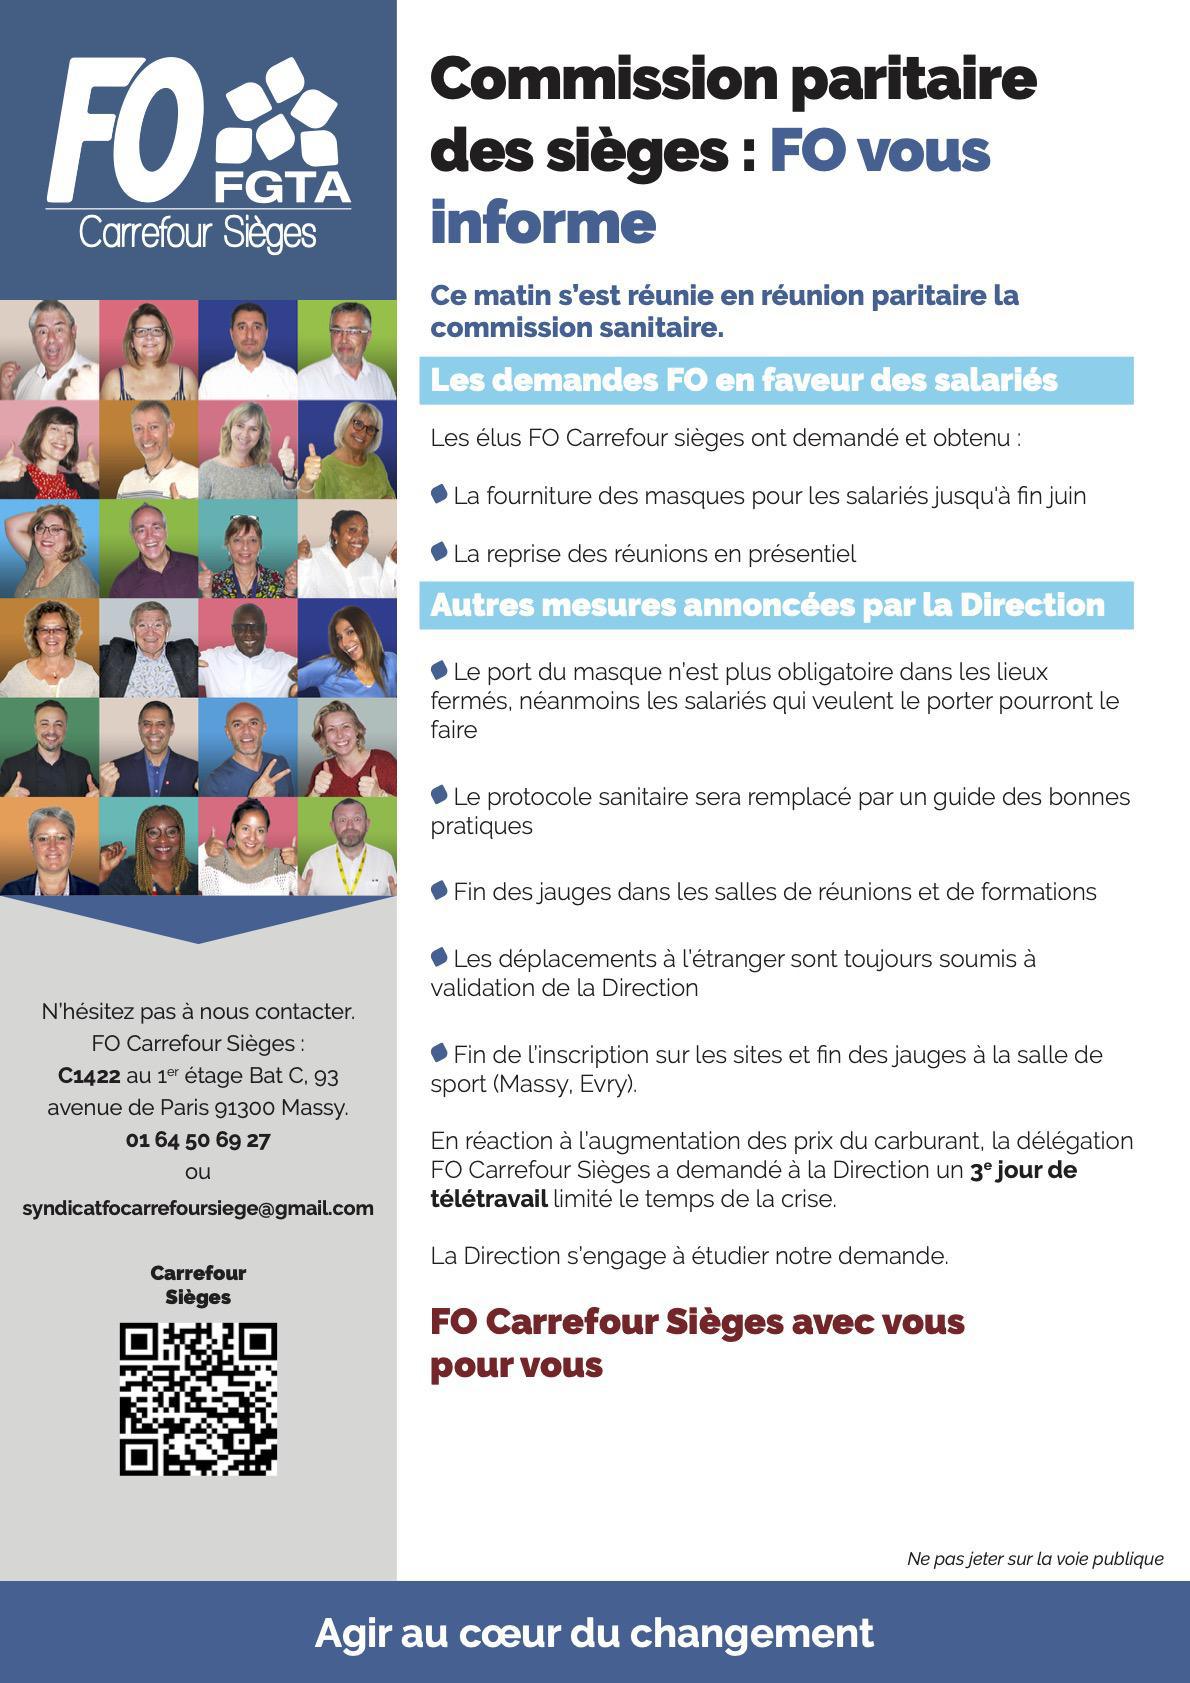 Commission paritaire des Sièges: FO Carrefour Sièges vous informe!